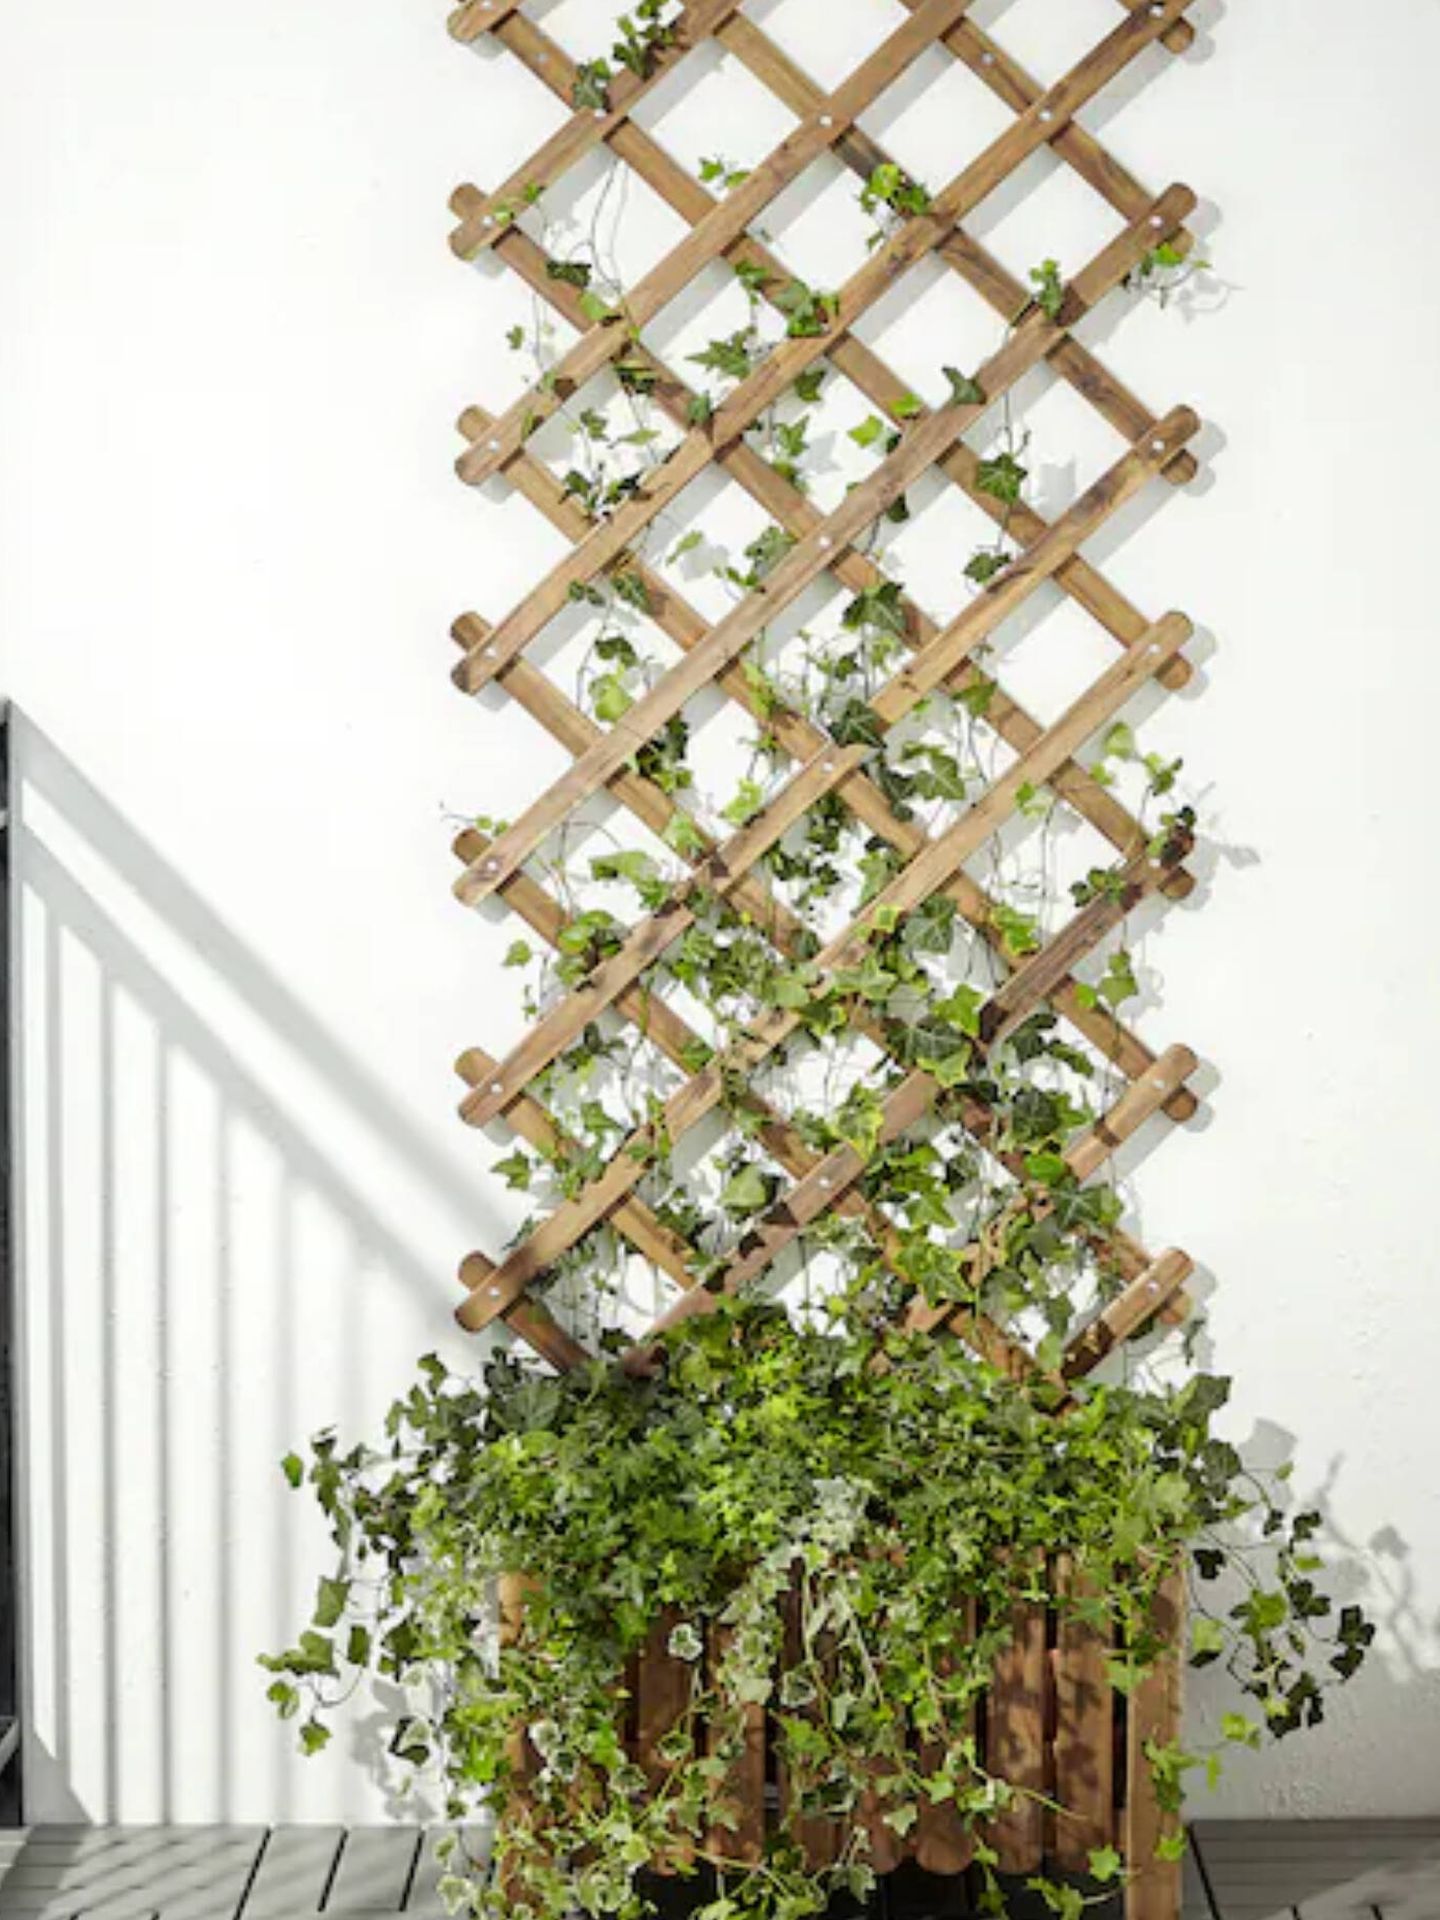 Decora tu jardín con estos 7 imprescindibles. (Ikea/Cortesía)